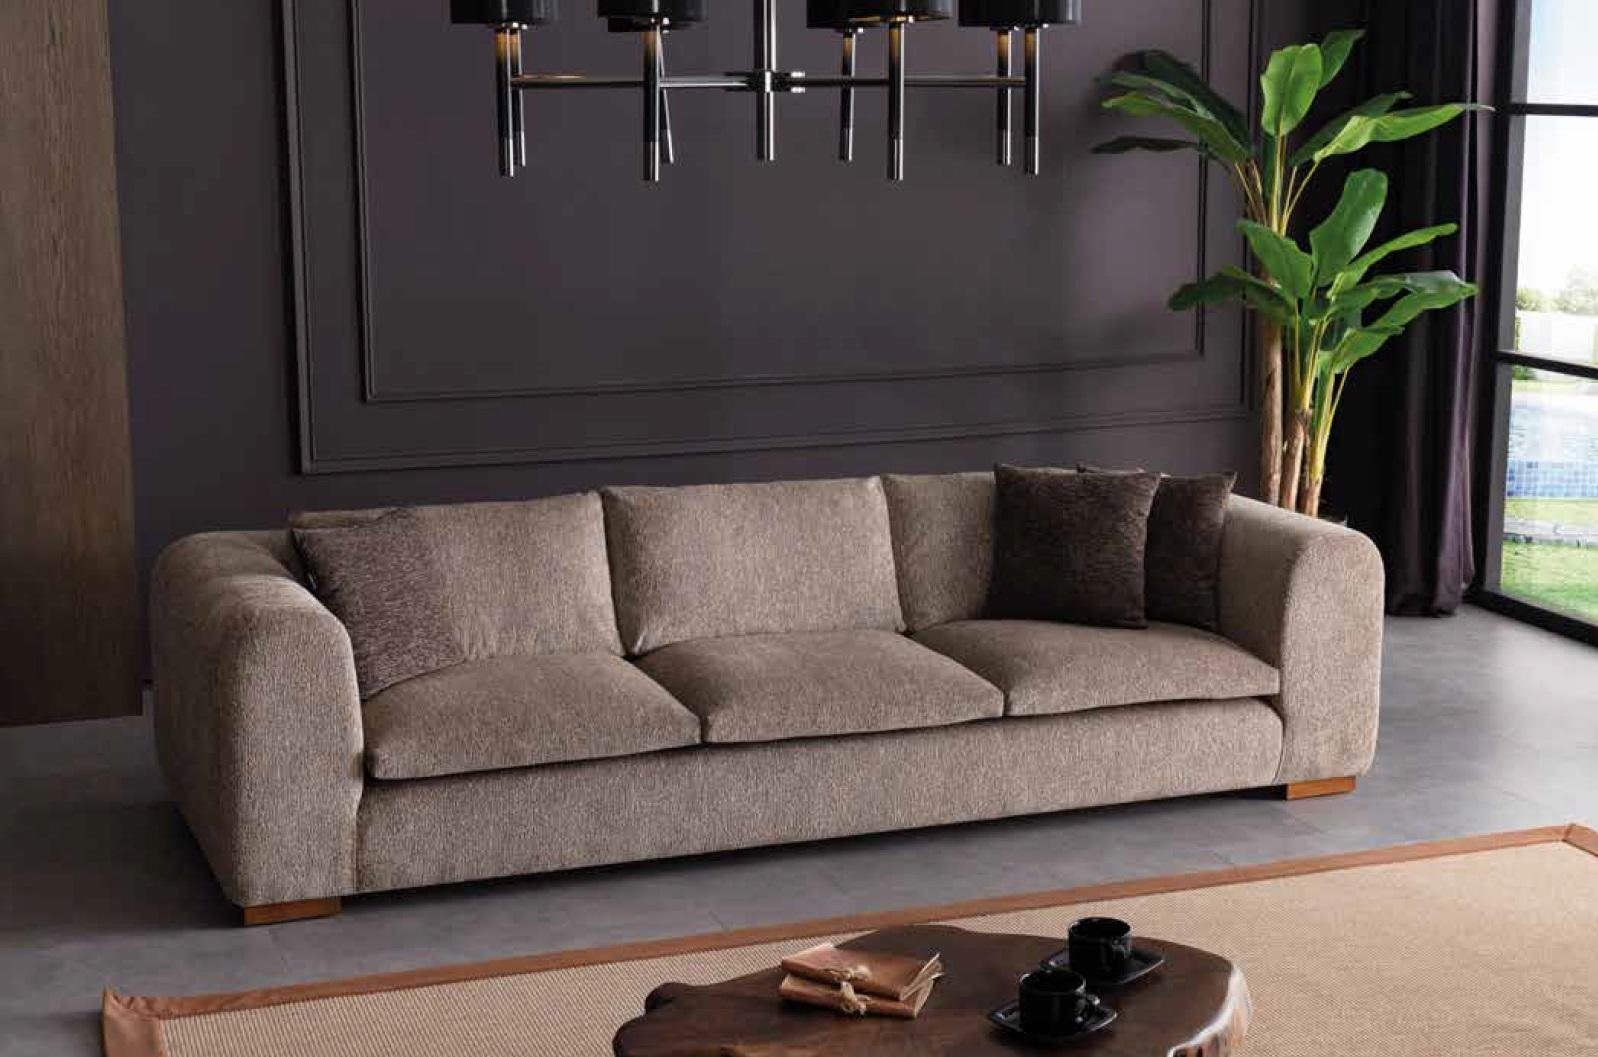 JVmoebel Sofa Big Sofa Couch 280cm Möbel Wohnzimmer Couchen Stoff Textil, Made in Europe